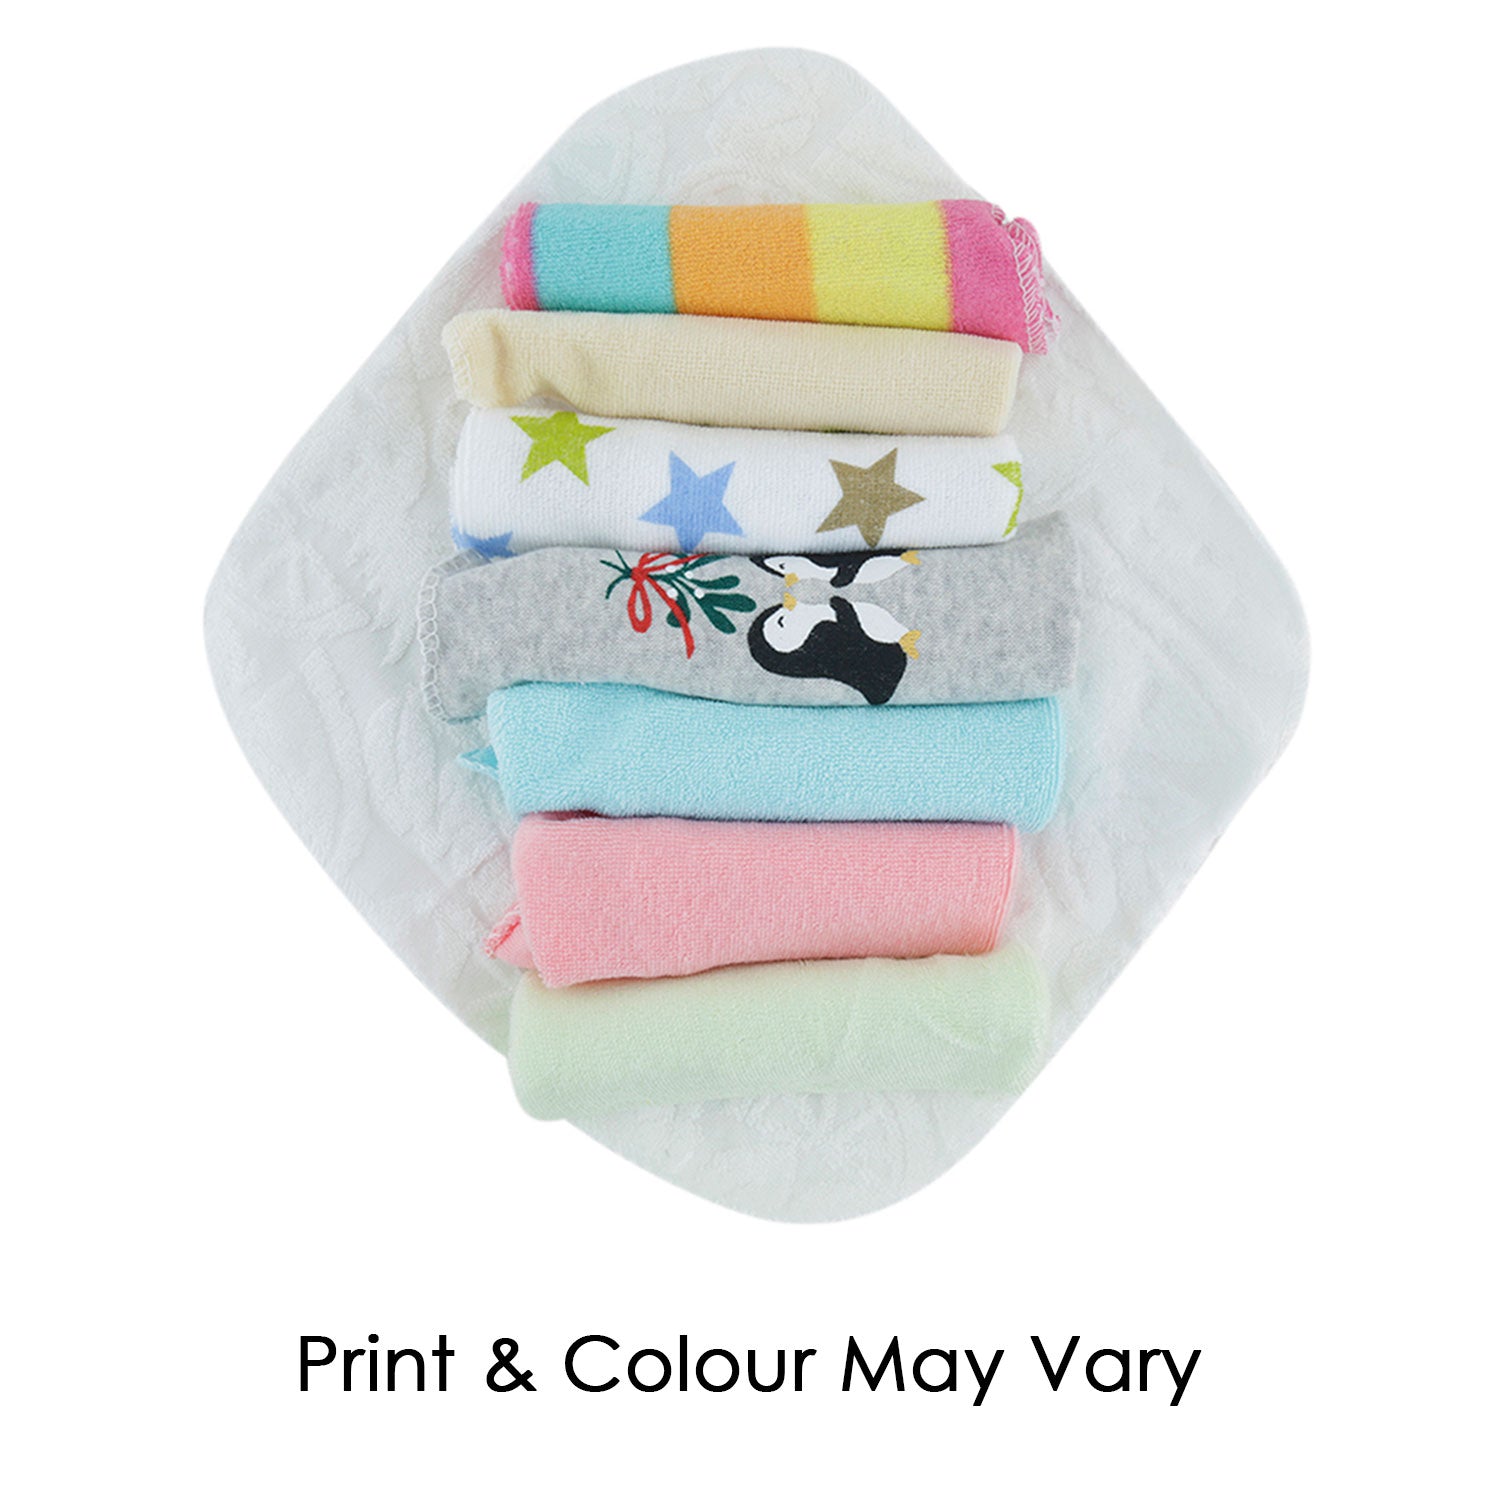 Printed Multi-Colored 8 Pk Wash Cloth